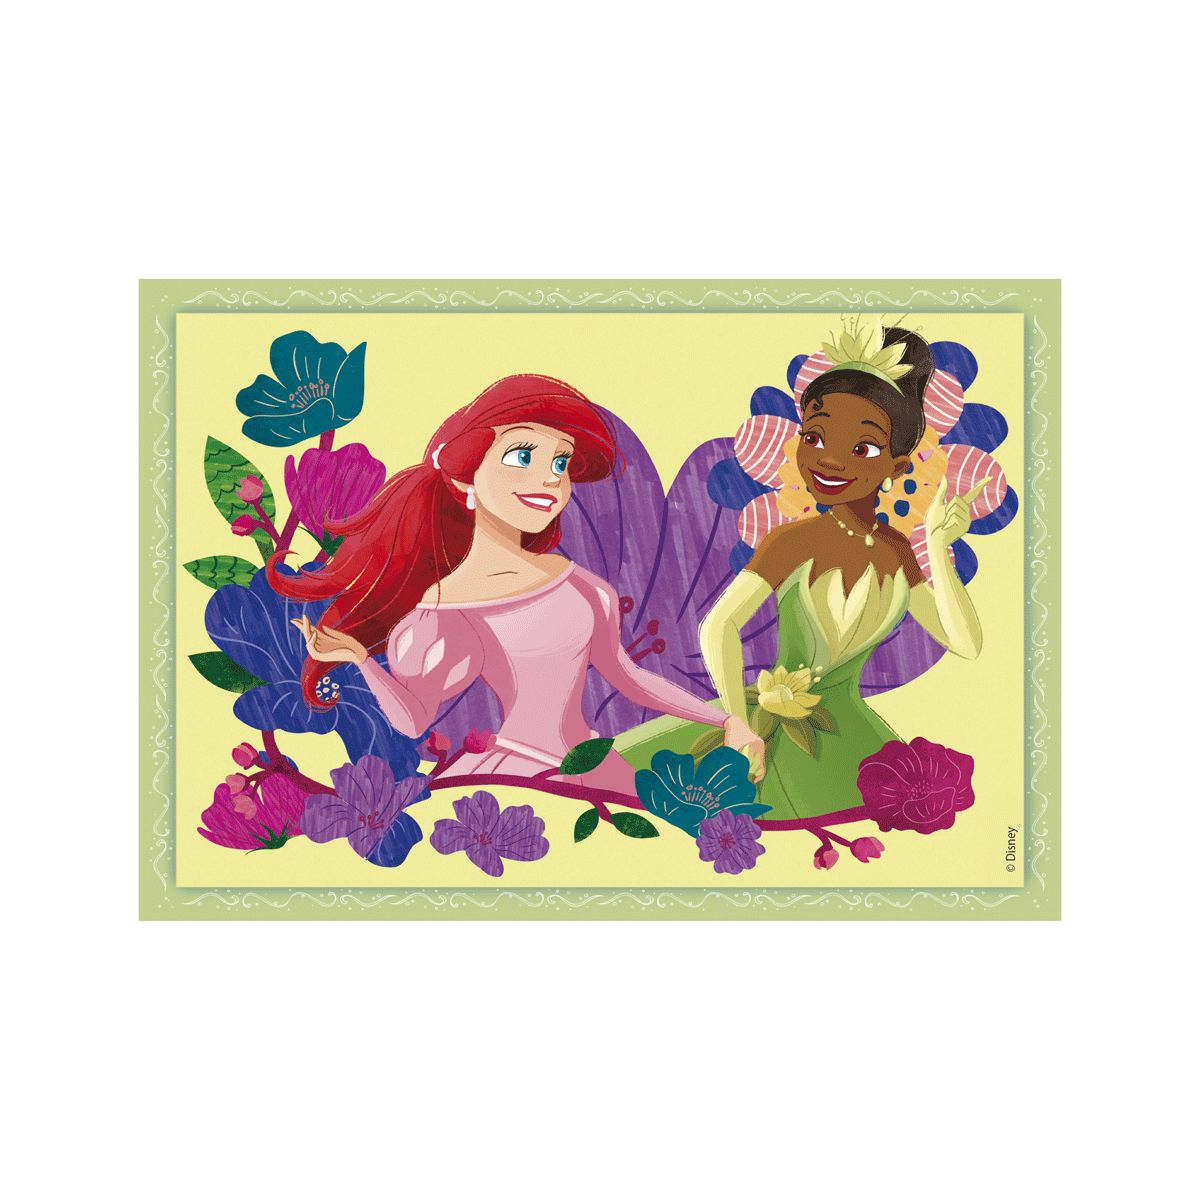 Clementoni supercolor puzzle disney princess - 1x12 + 1x16 + 1x20 + 1x24 pezzi, puzzle bambini 3 anni - CLEMENTONI, DISNEY PRINCESS